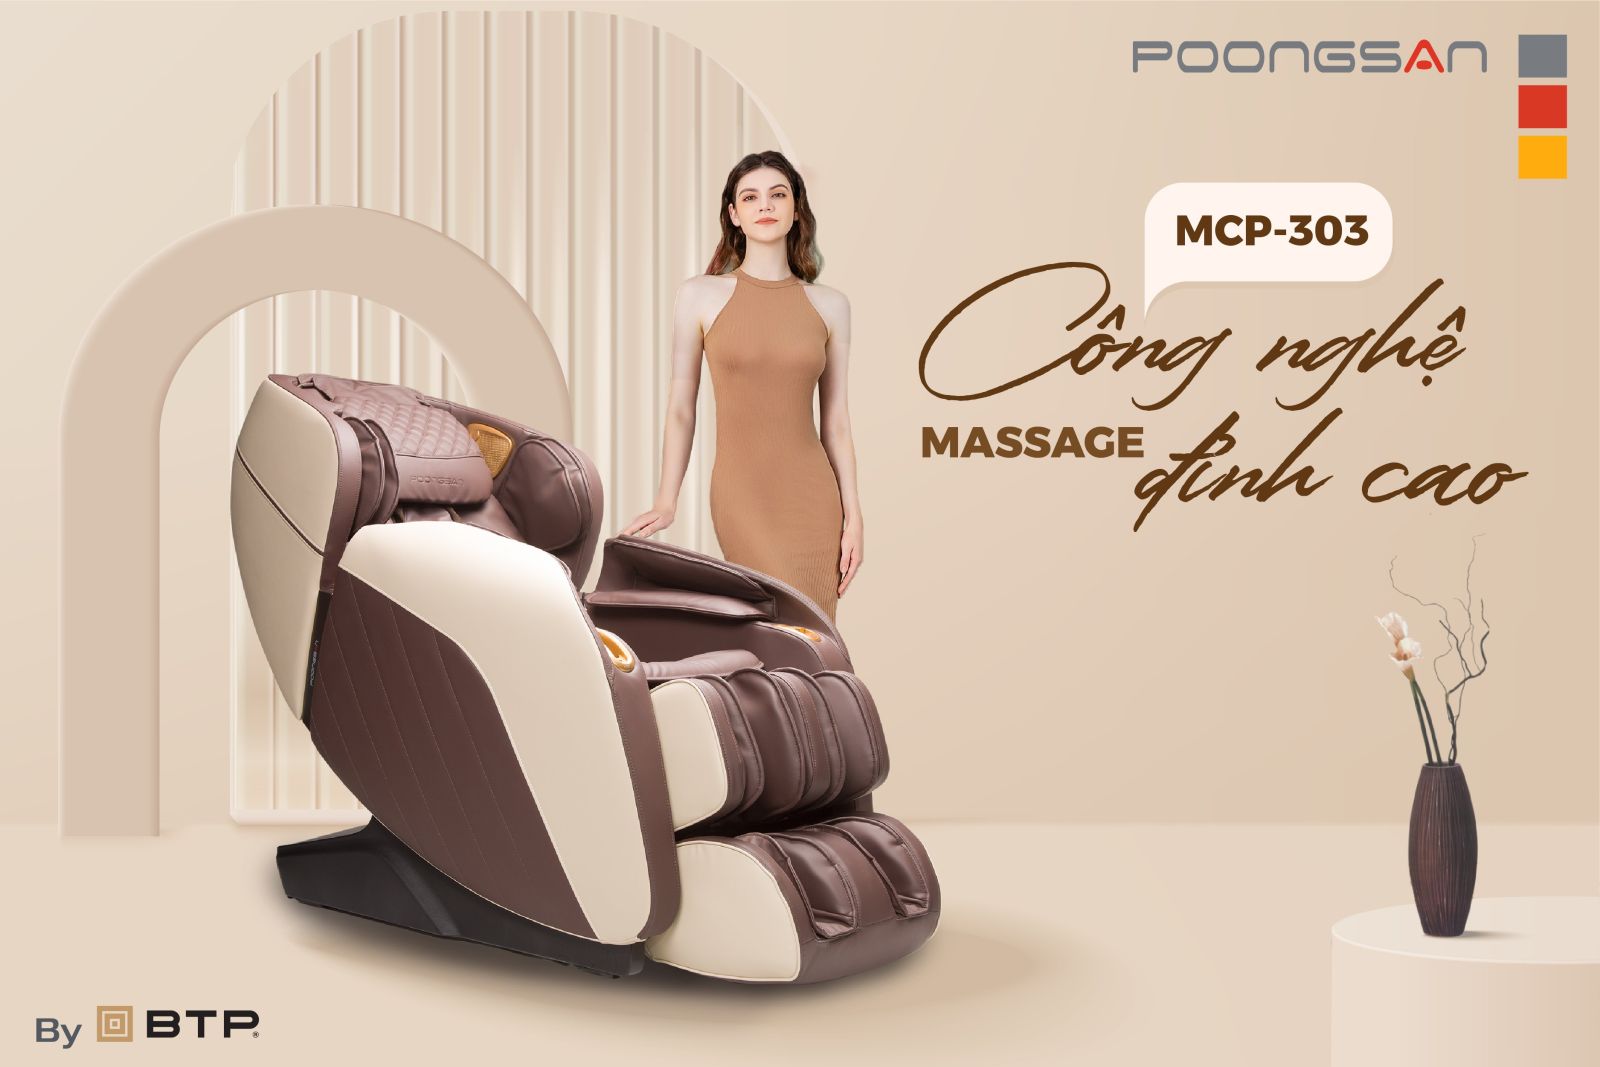 Với công nghệ massage đỉnh cao, Poongsan MCP-303 mang đến nhiều tính năng vượt trội